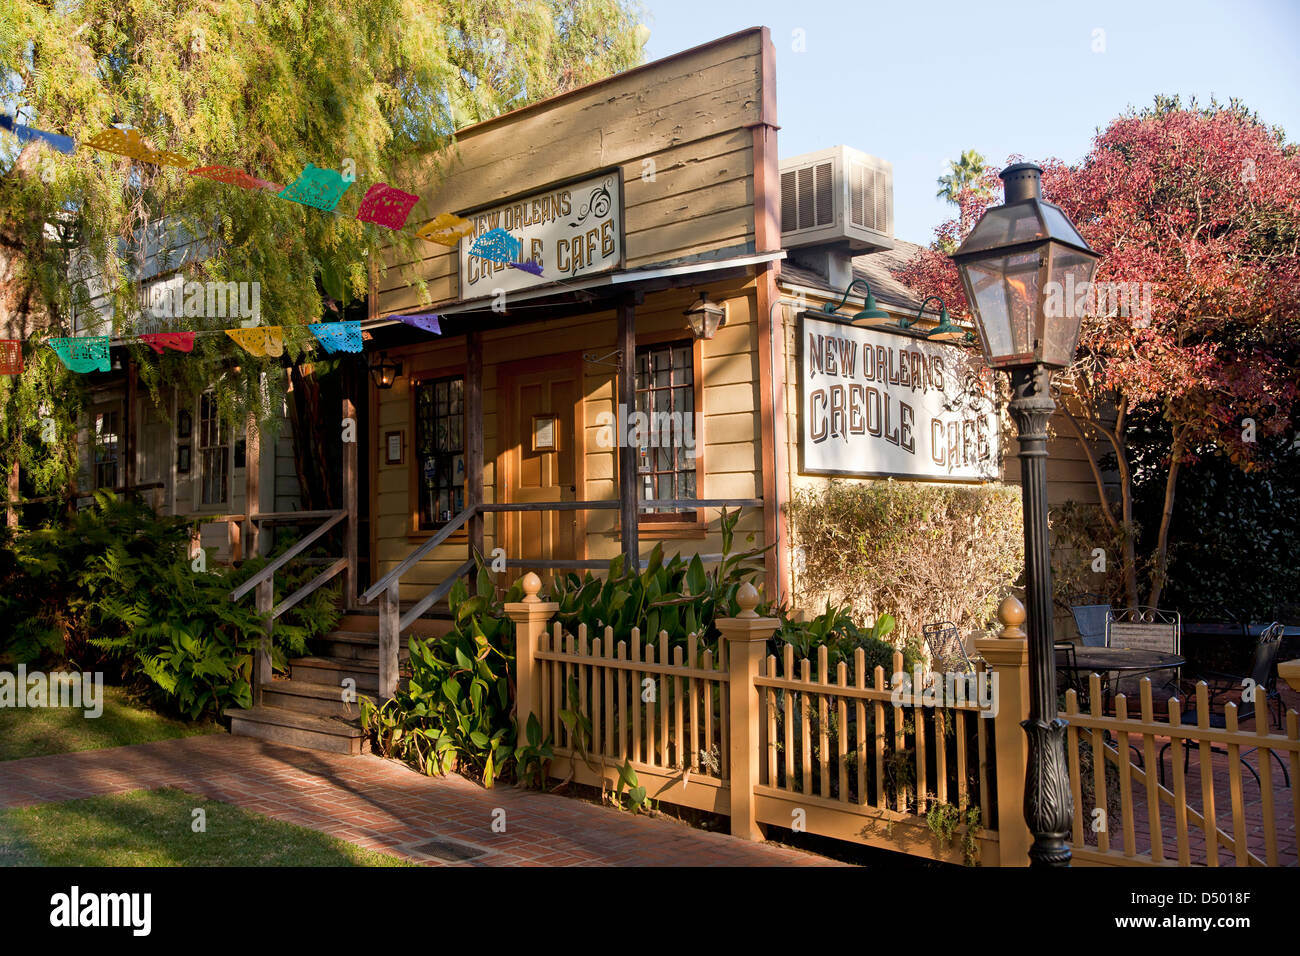 New Orleans kreolische Cafe, Old Town State Park, San Diego, Kalifornien, Vereinigte Staaten von Amerika, Vereinigte Staaten Stockfoto